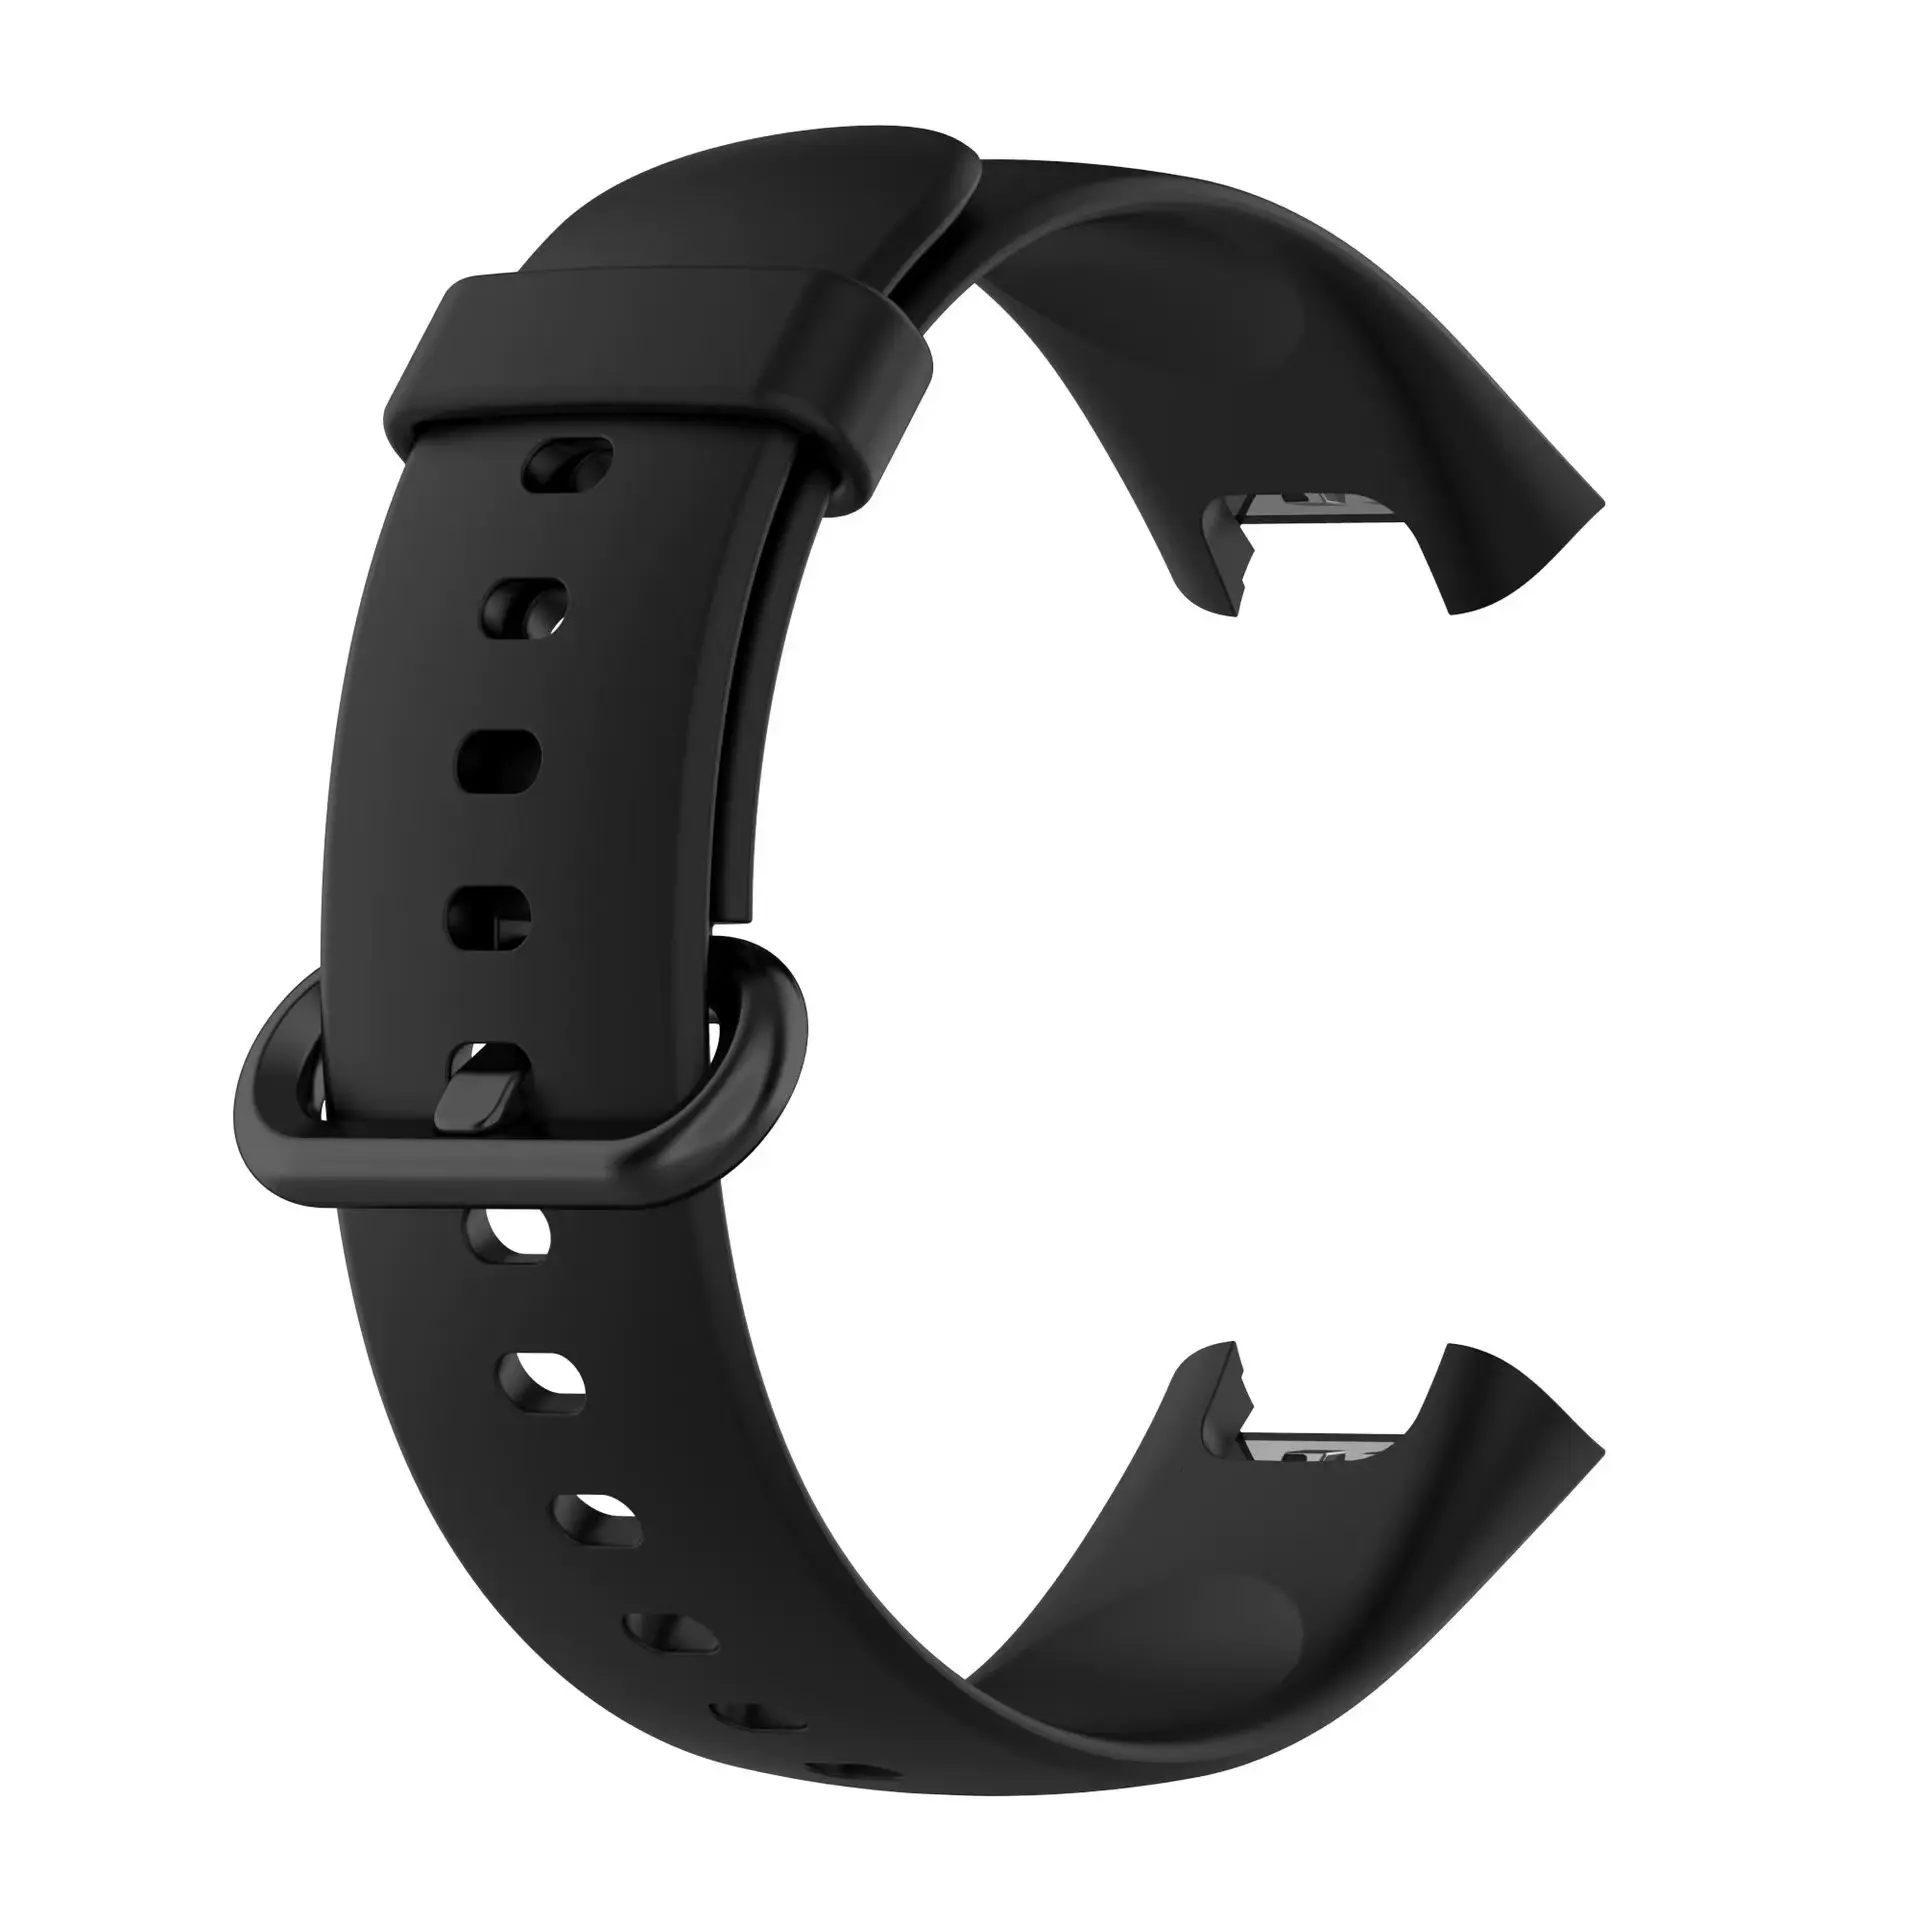 New Replacement Smart Watch Silicone Strap For Xiaomi Mi Watch 2 Lite/Redmi Watch 2 Lite Fashion Sport Watchband Strap Black Red